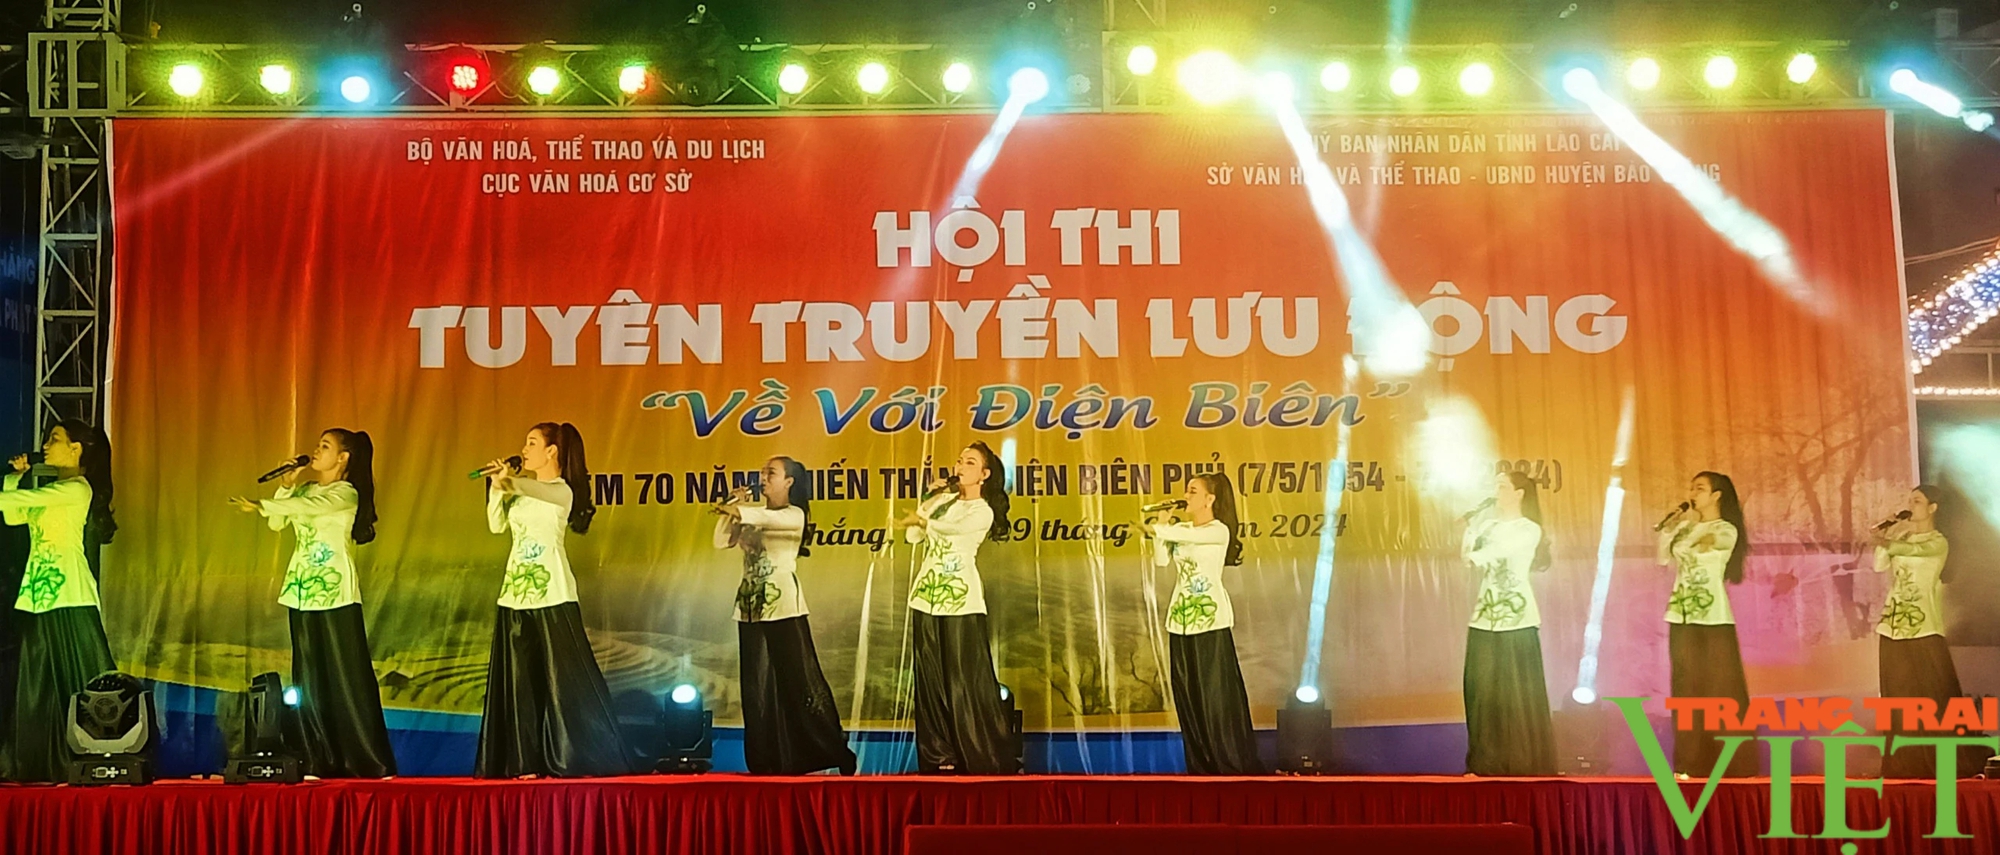 Tưng bừng hội thi "Về với Điện Biên" ở một huyện của Lào Cai, thu hút hàng nghìn khán giả- Ảnh 6.